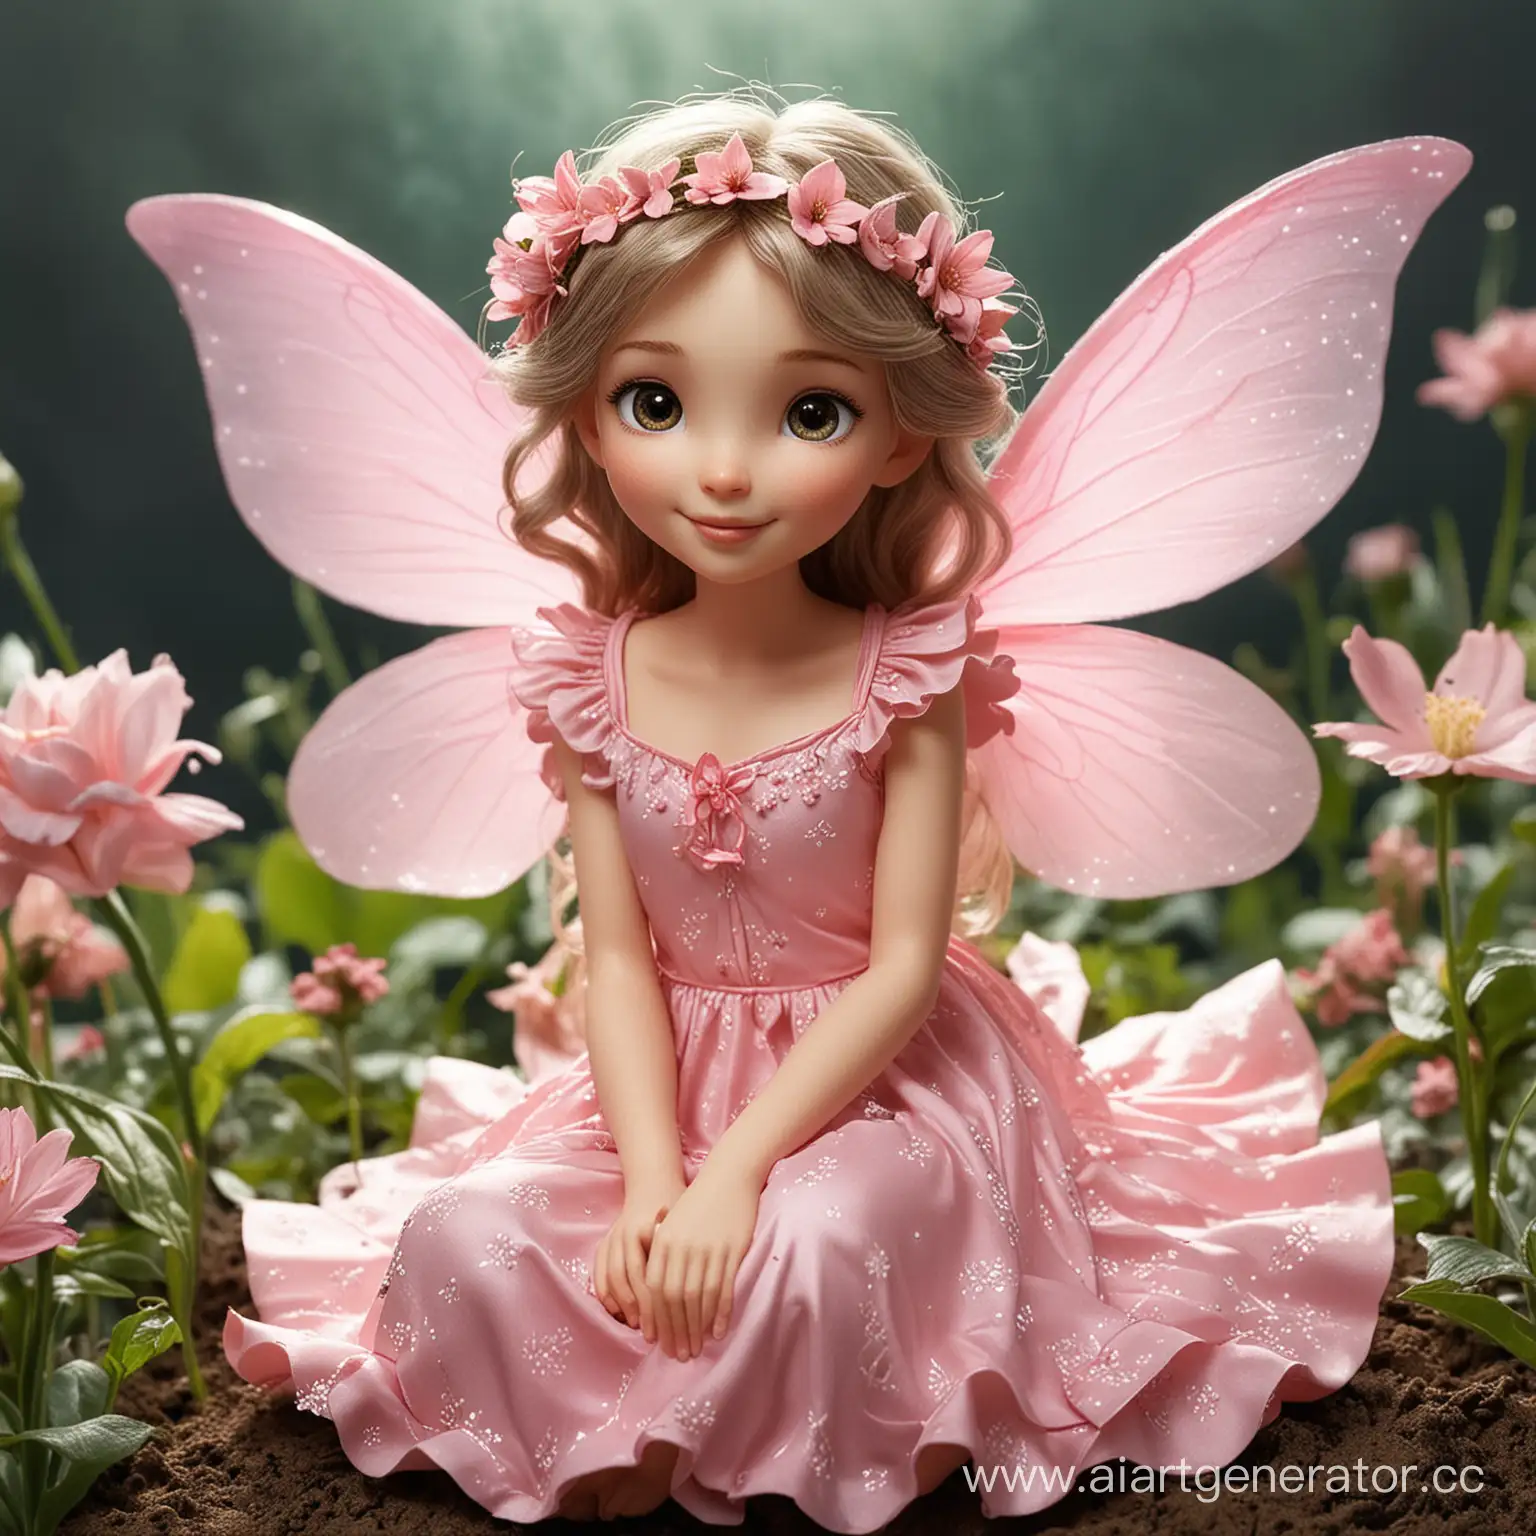 фея цветов сидит сверху планеты Земля и садит на ней цветы; она с добрыми глазами и улыбкой, милая и добродушная,  одета в розовое платье, ее крылья очень красивые
